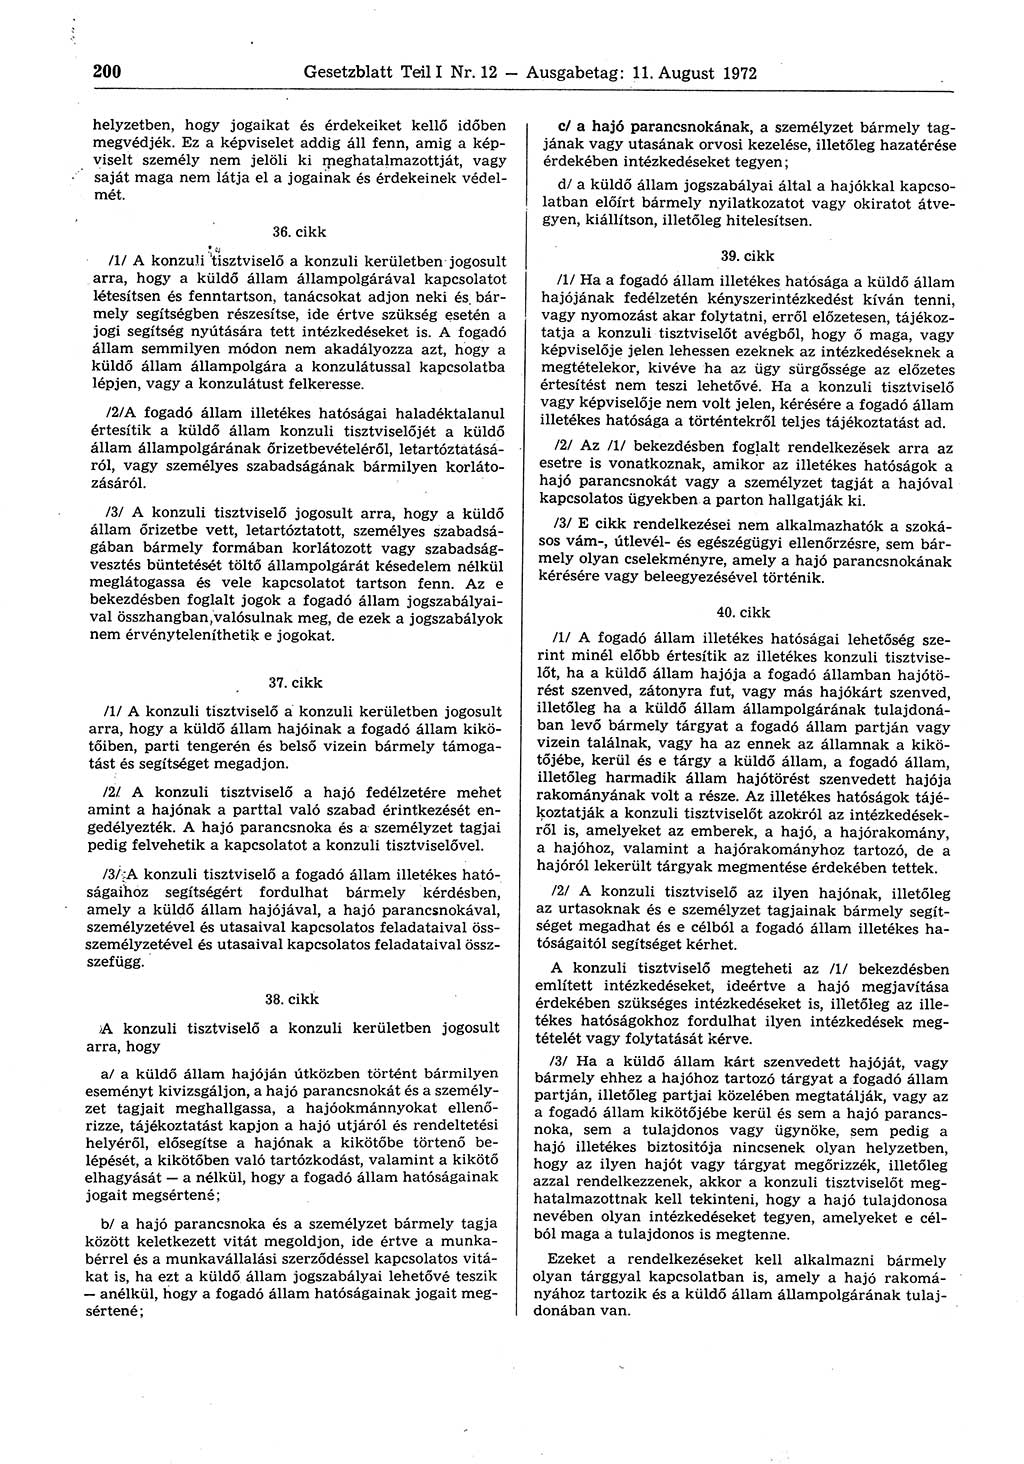 Gesetzblatt (GBl.) der Deutschen Demokratischen Republik (DDR) Teil Ⅰ 1972, Seite 200 (GBl. DDR Ⅰ 1972, S. 200)